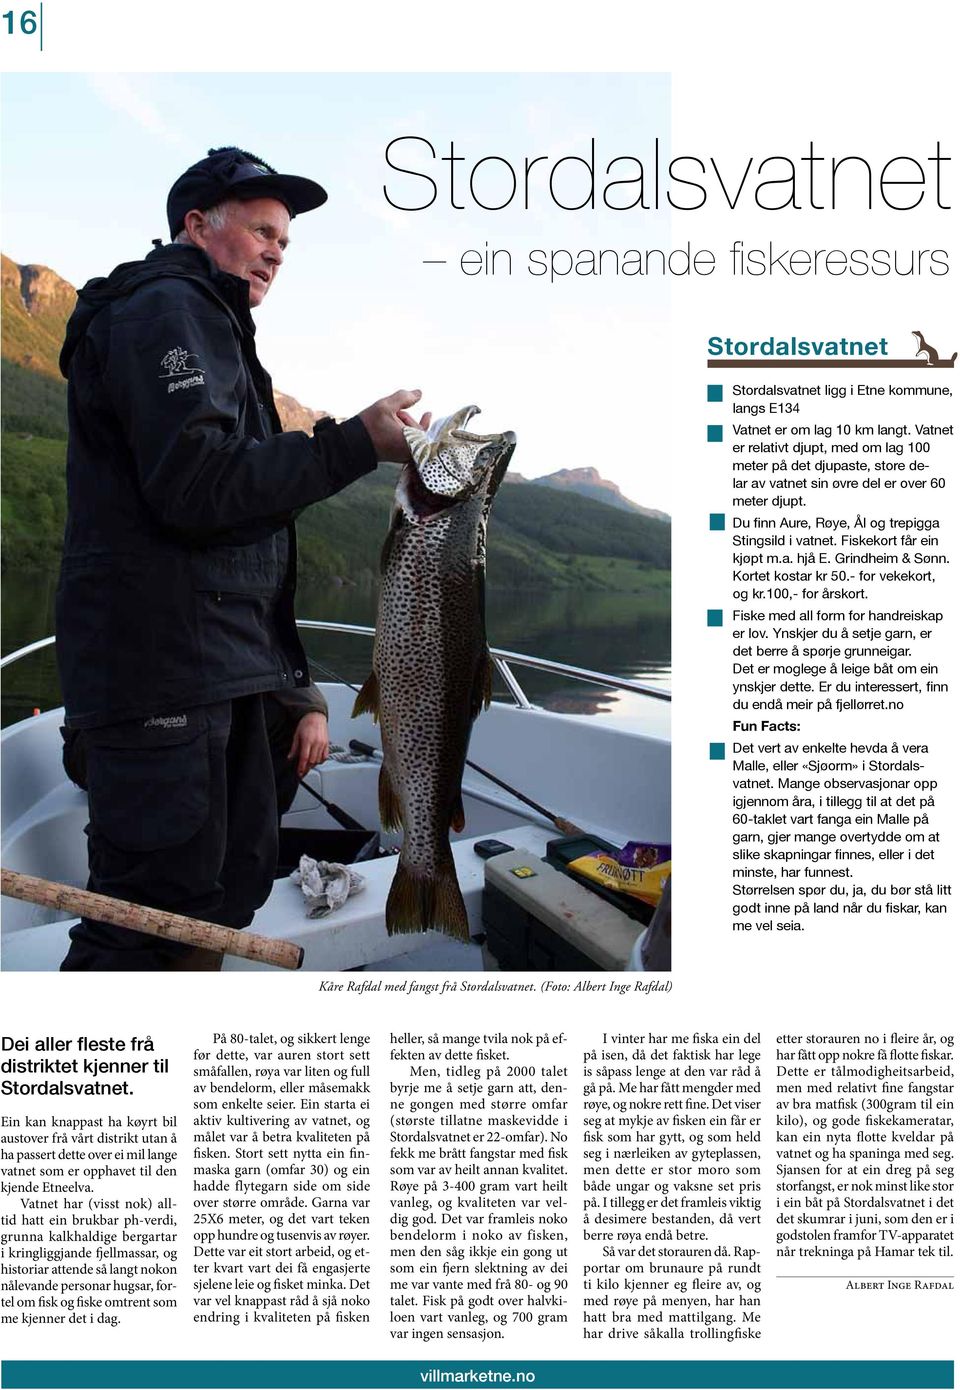 Fiskekort får ein kjøpt m.a. hjå E. Grindheim & Sønn. Kortet kostar kr 50.- for vekekort, og kr.100,- for årskort. Fiske med all form for handreiskap er lov.